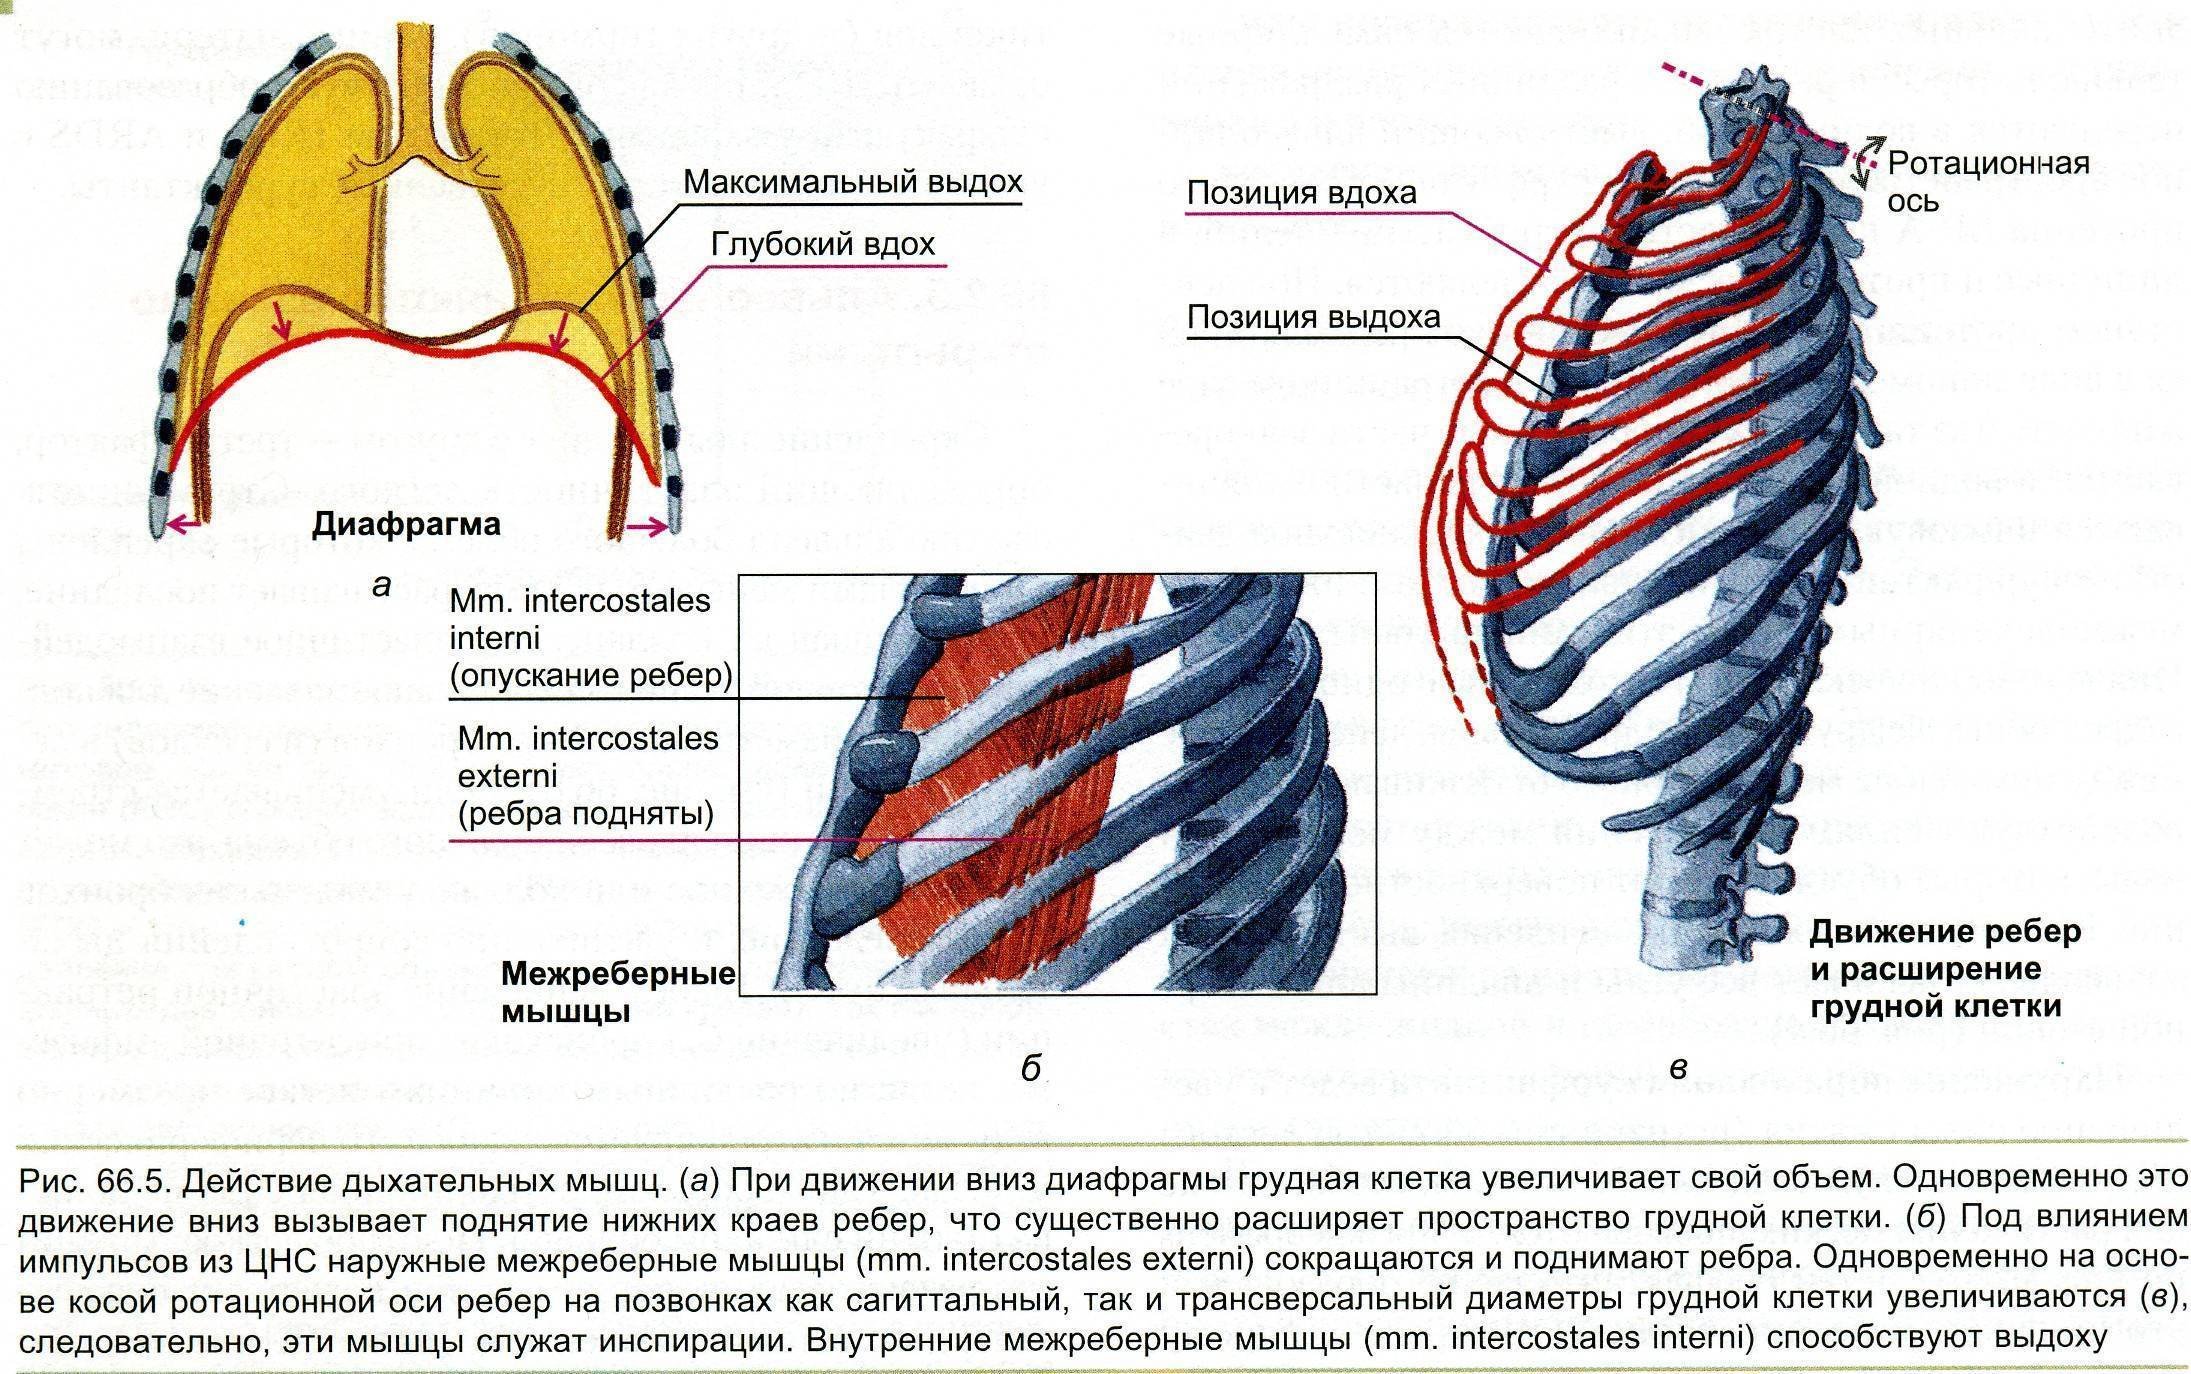 Диафрагма расслабляется диафрагма сокращается внутренние межреберные. Наружные межреберные мышцы дыхание. При вдохе наружные межреберные мышцы и диафрагма. Вдох расширение грудной клетки мышцы. Внутренние межреберные мышцы при вдохе.